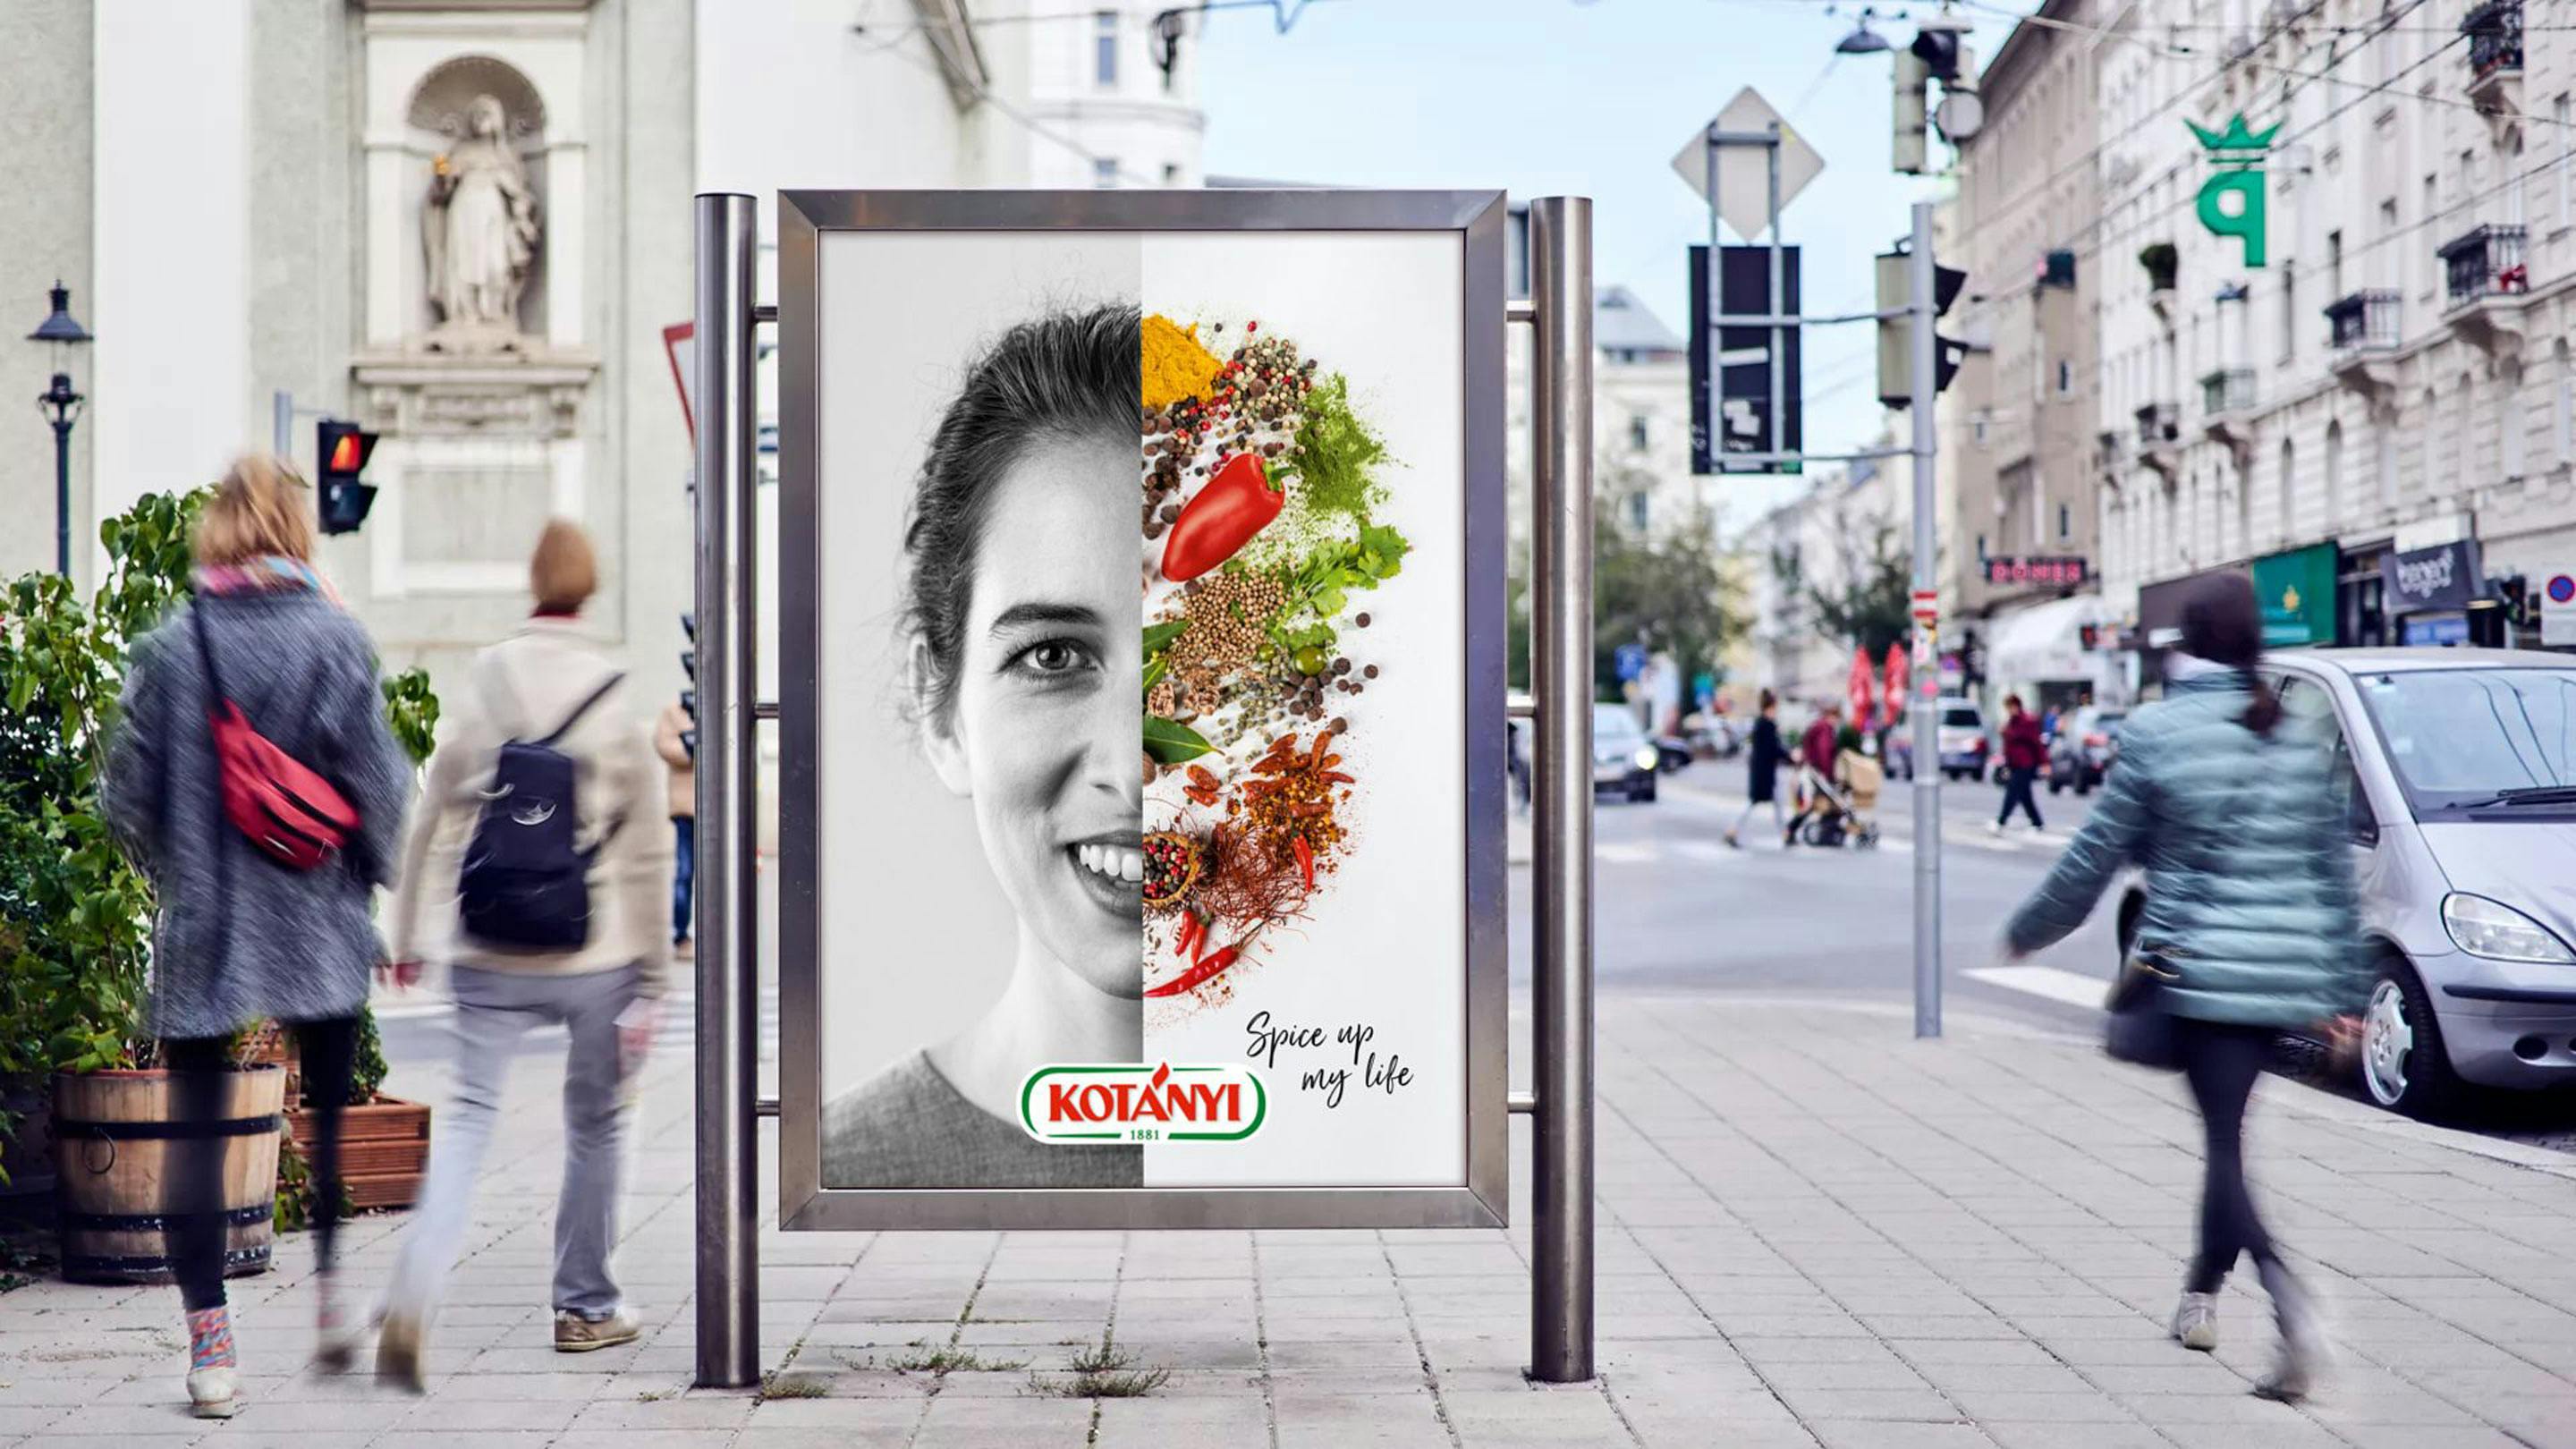 Kotányi Spice Up My Life Plakat in Wien